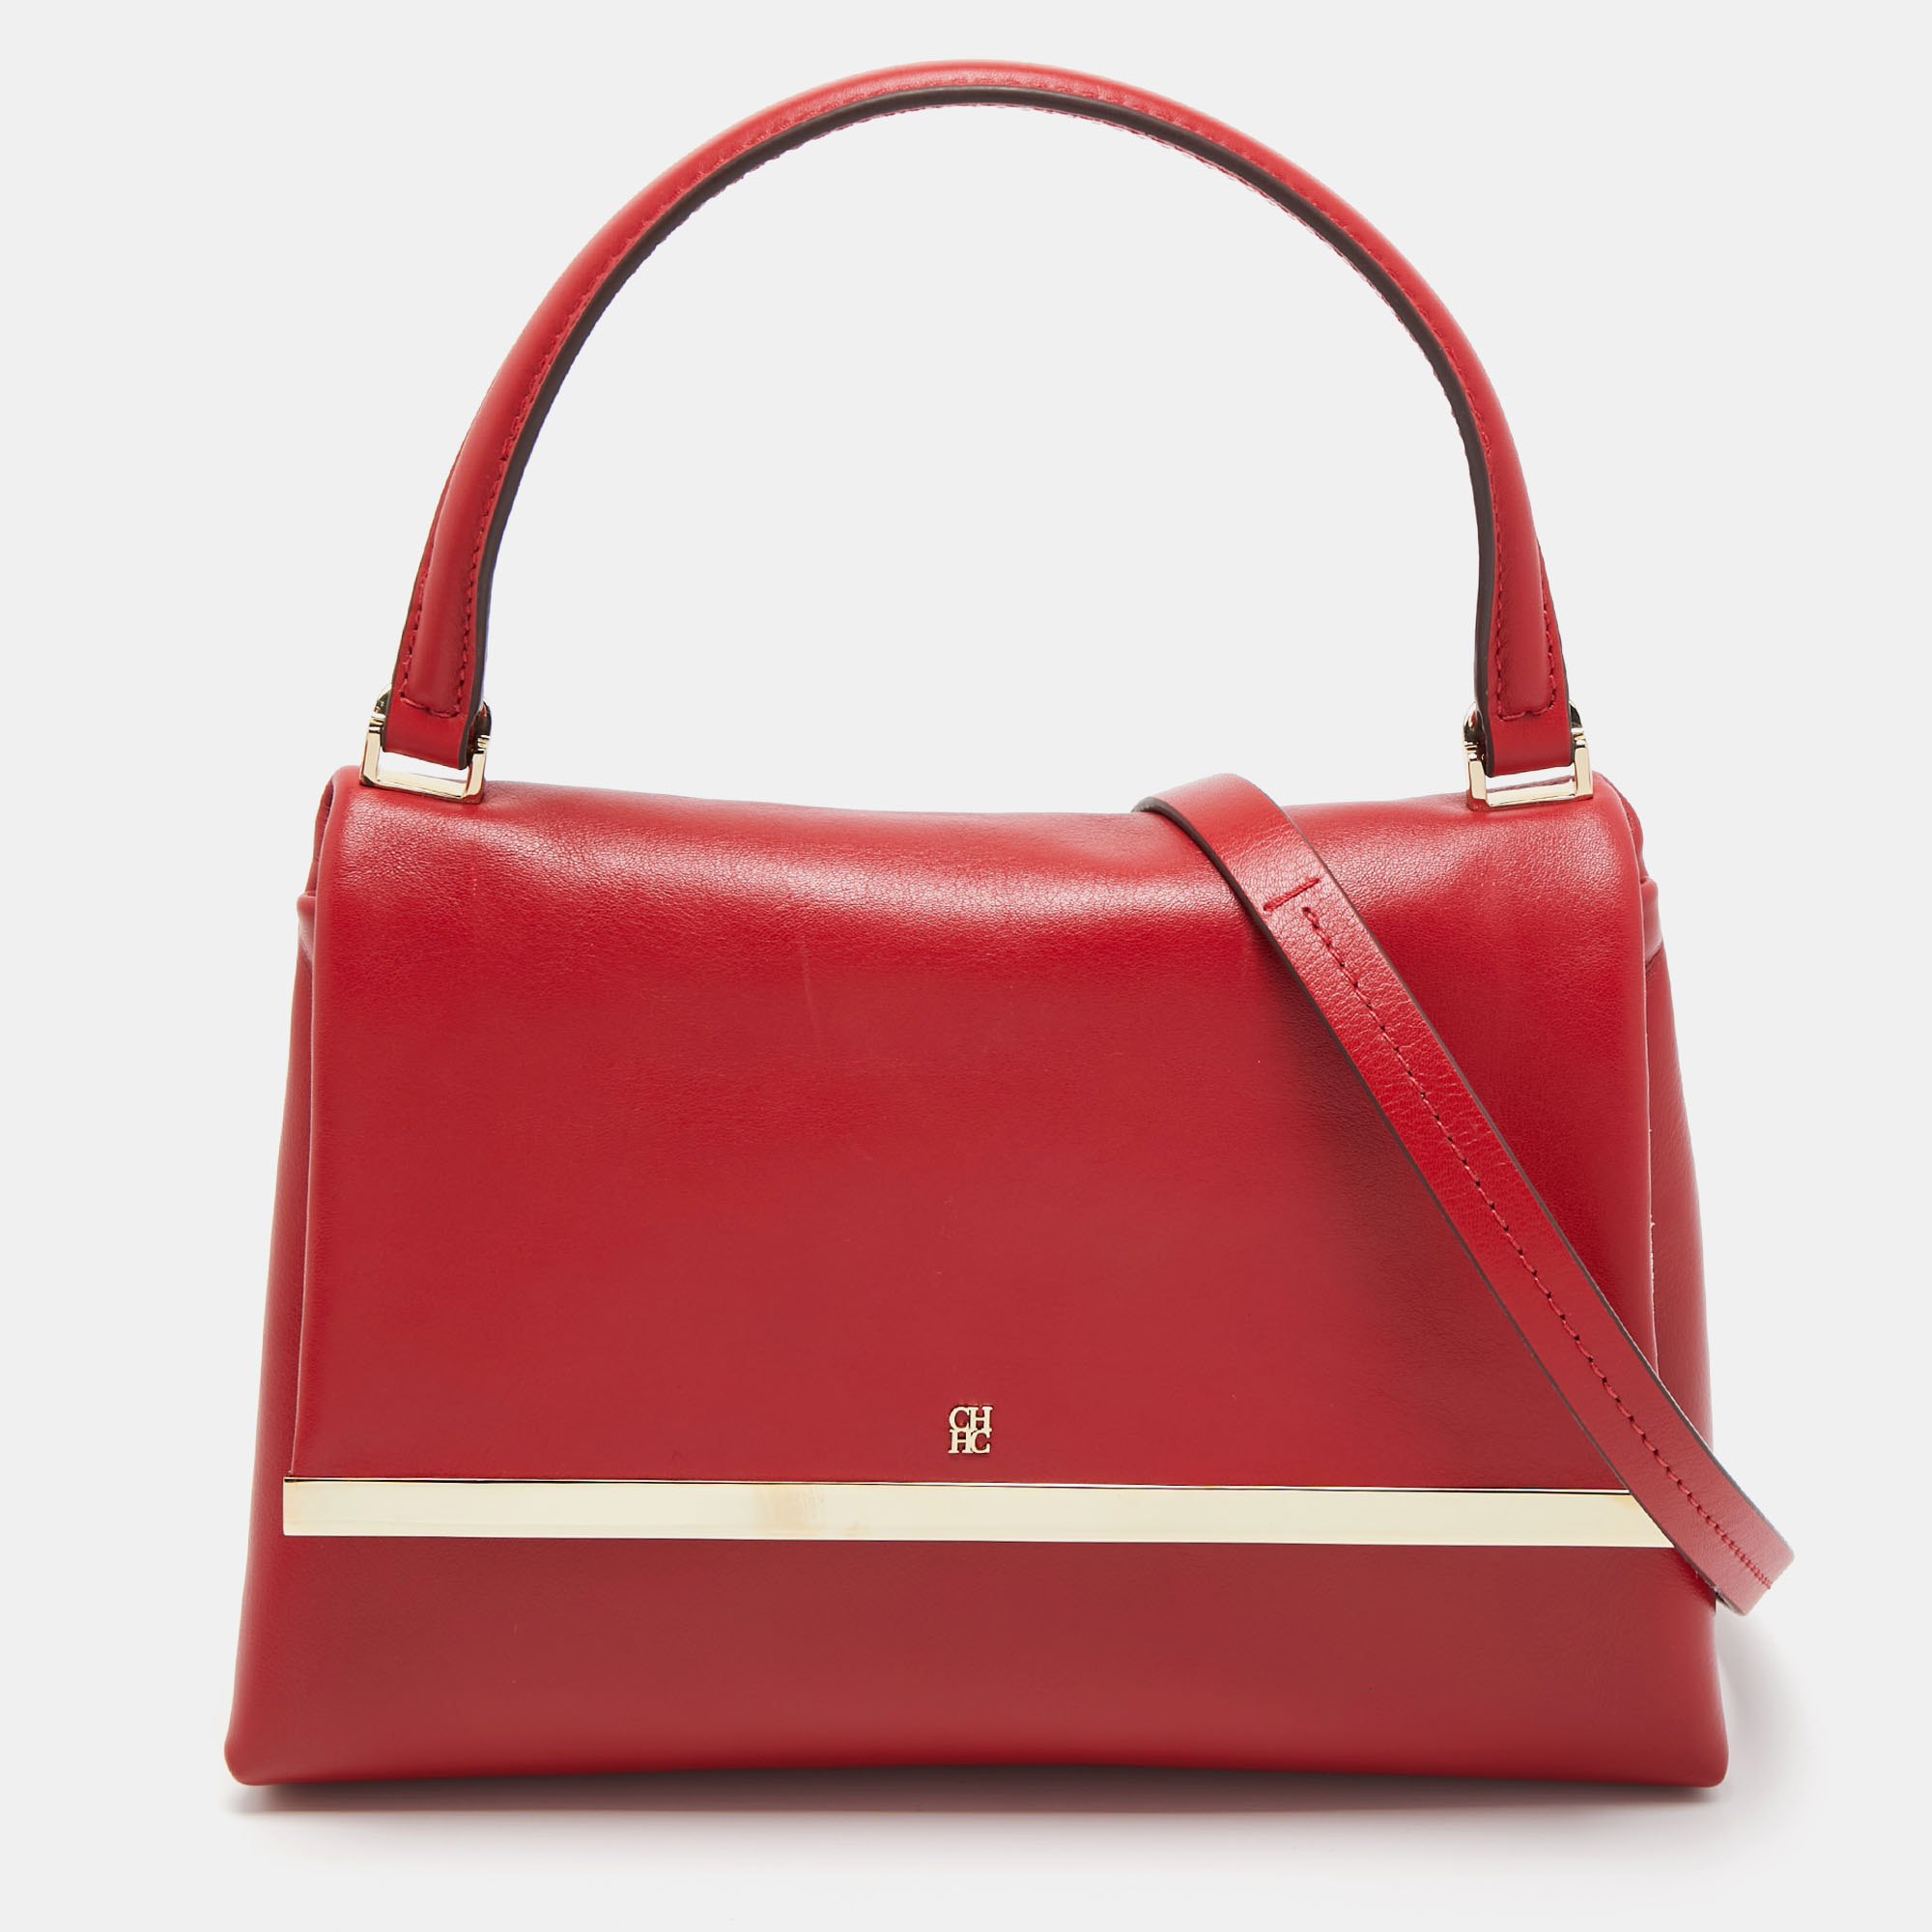 Carolina Herrera Red Leather Metal Bar Flap Top Handle Bag